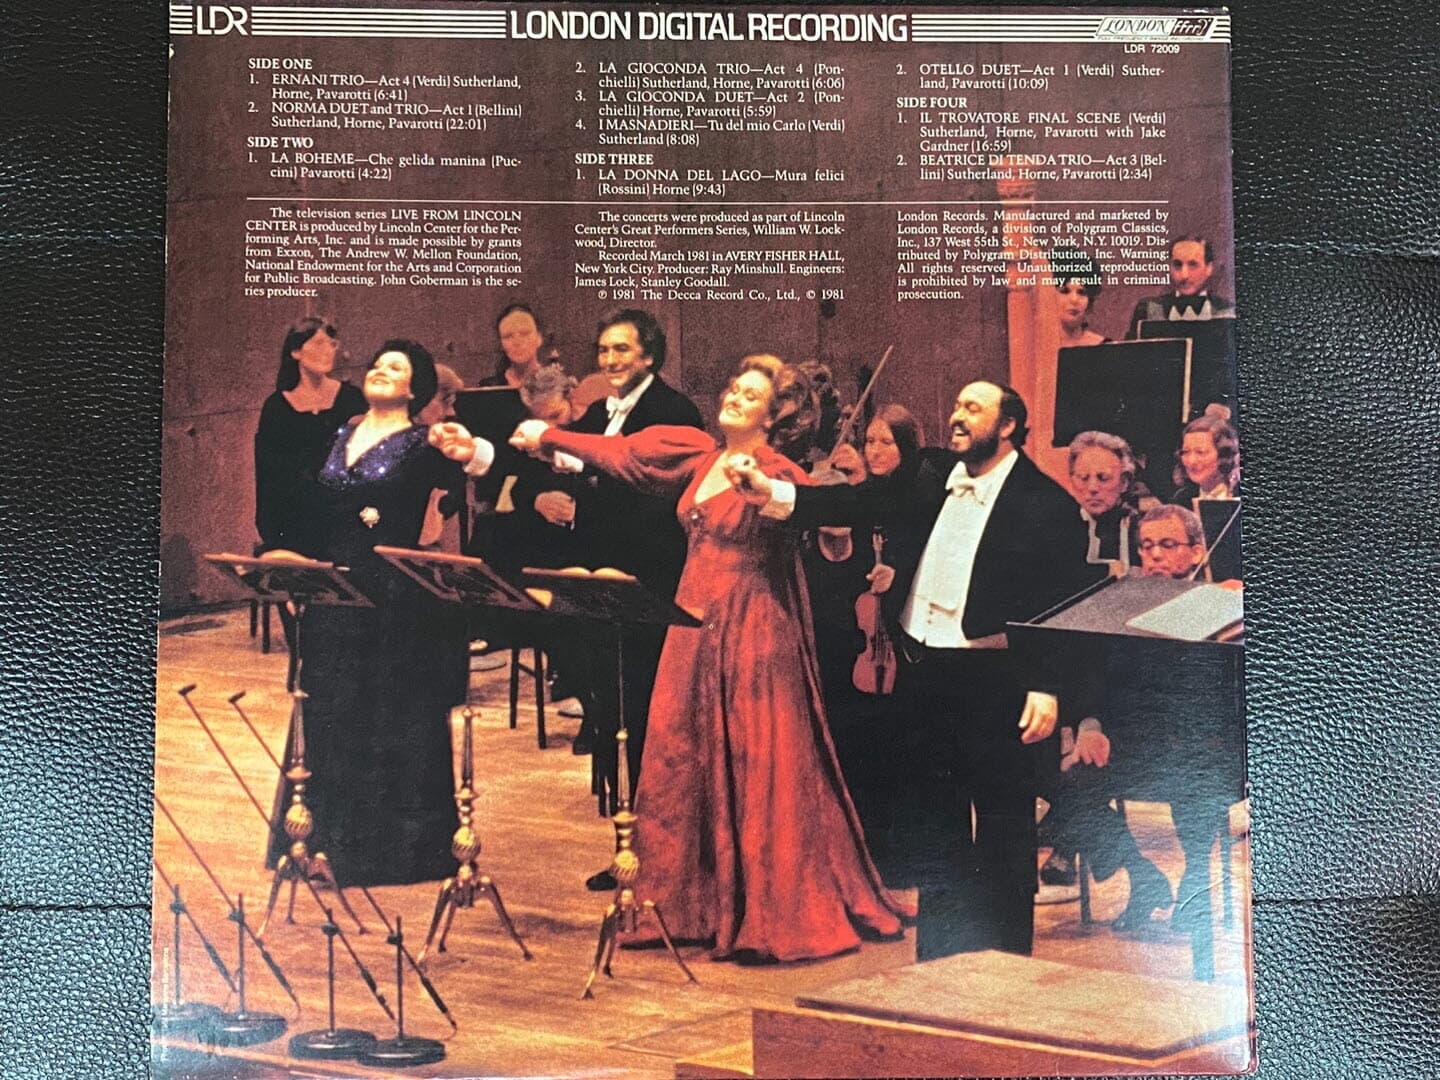 [LP] 파바로티,조안 서덜랜드,마릴린 혼,리차드 보닝 - Pavarotti - Live From Lincoln Center 2Lps [U.S반]